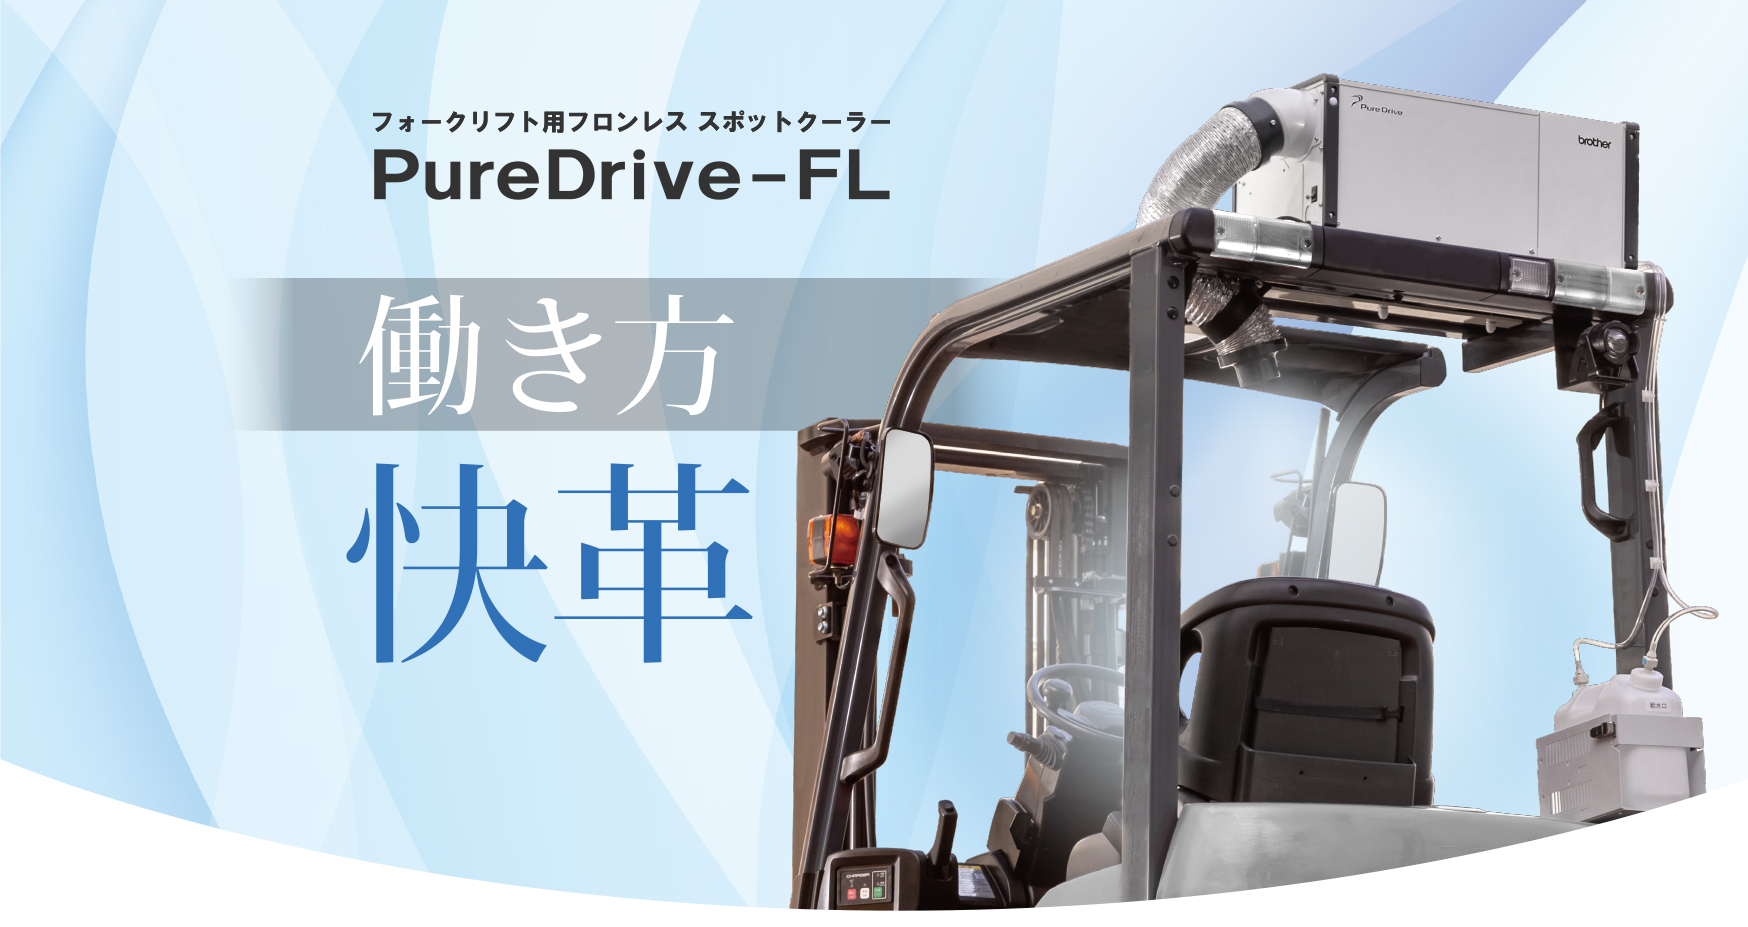 フォークリフト用フロンレス スポットクーラー PureDrive-FL、働き方改革